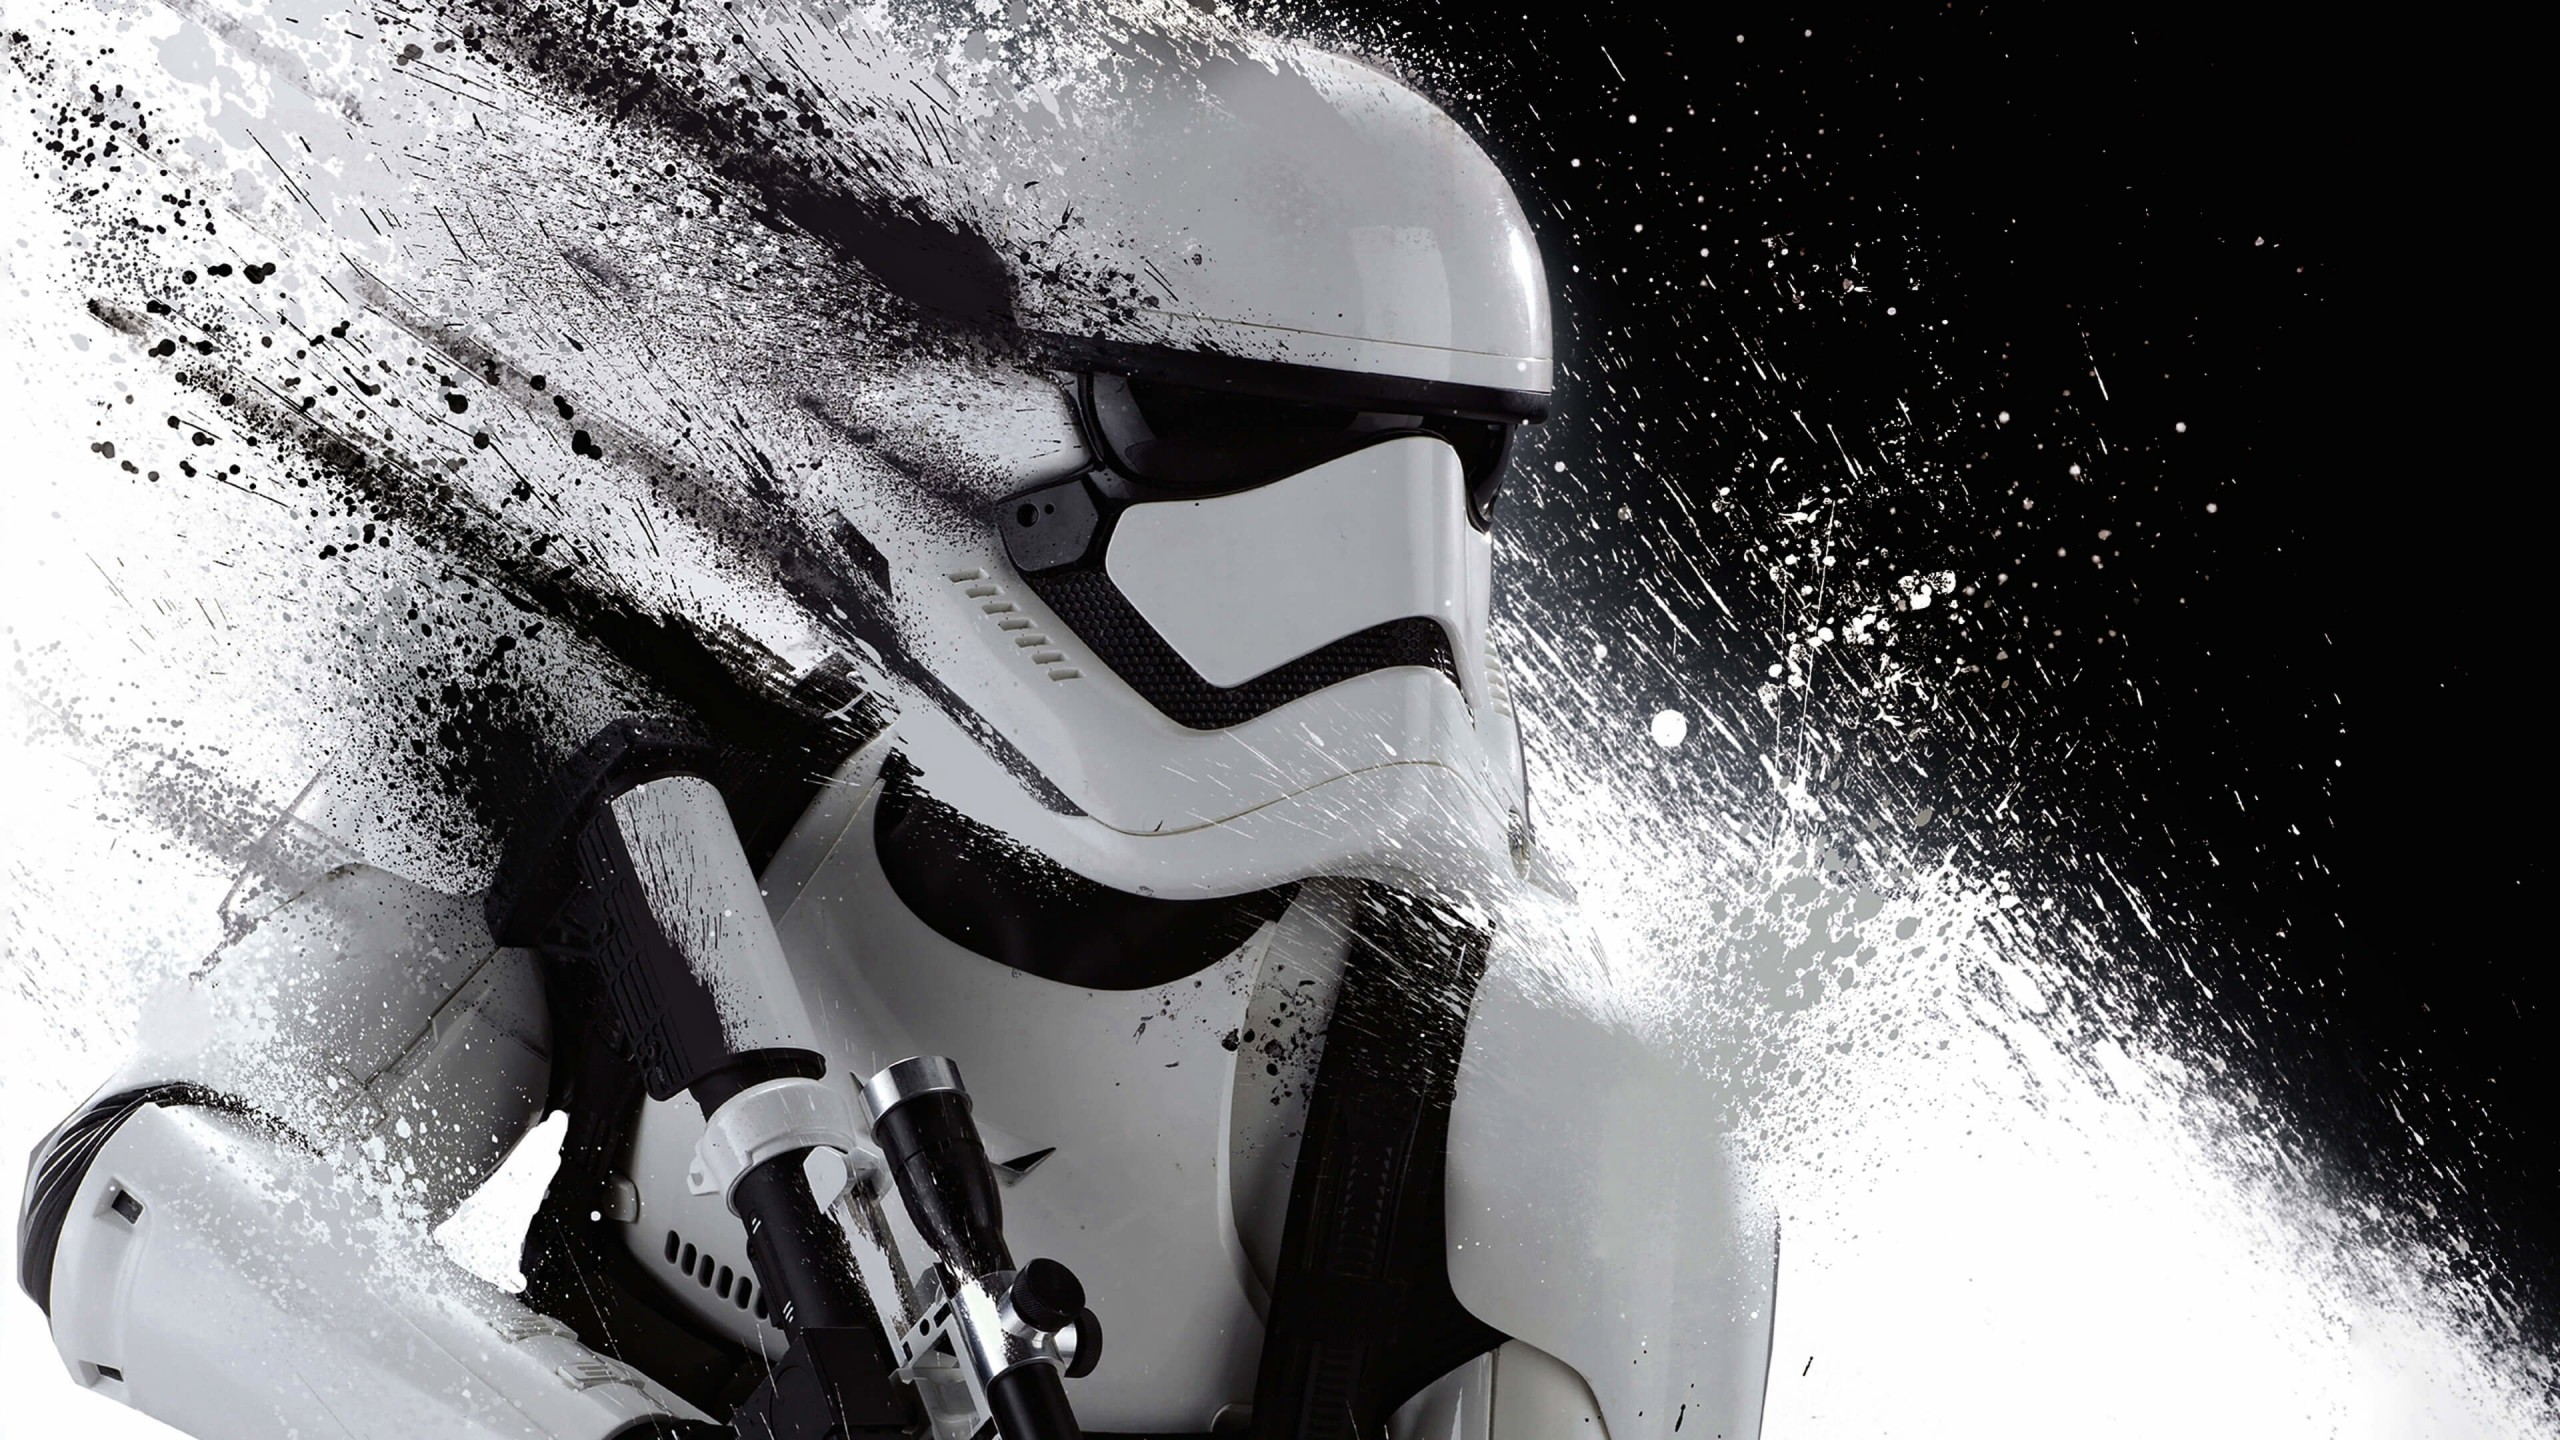 Stormtrooper Splatter Wallpaper for Social Media YouTube Channel Art